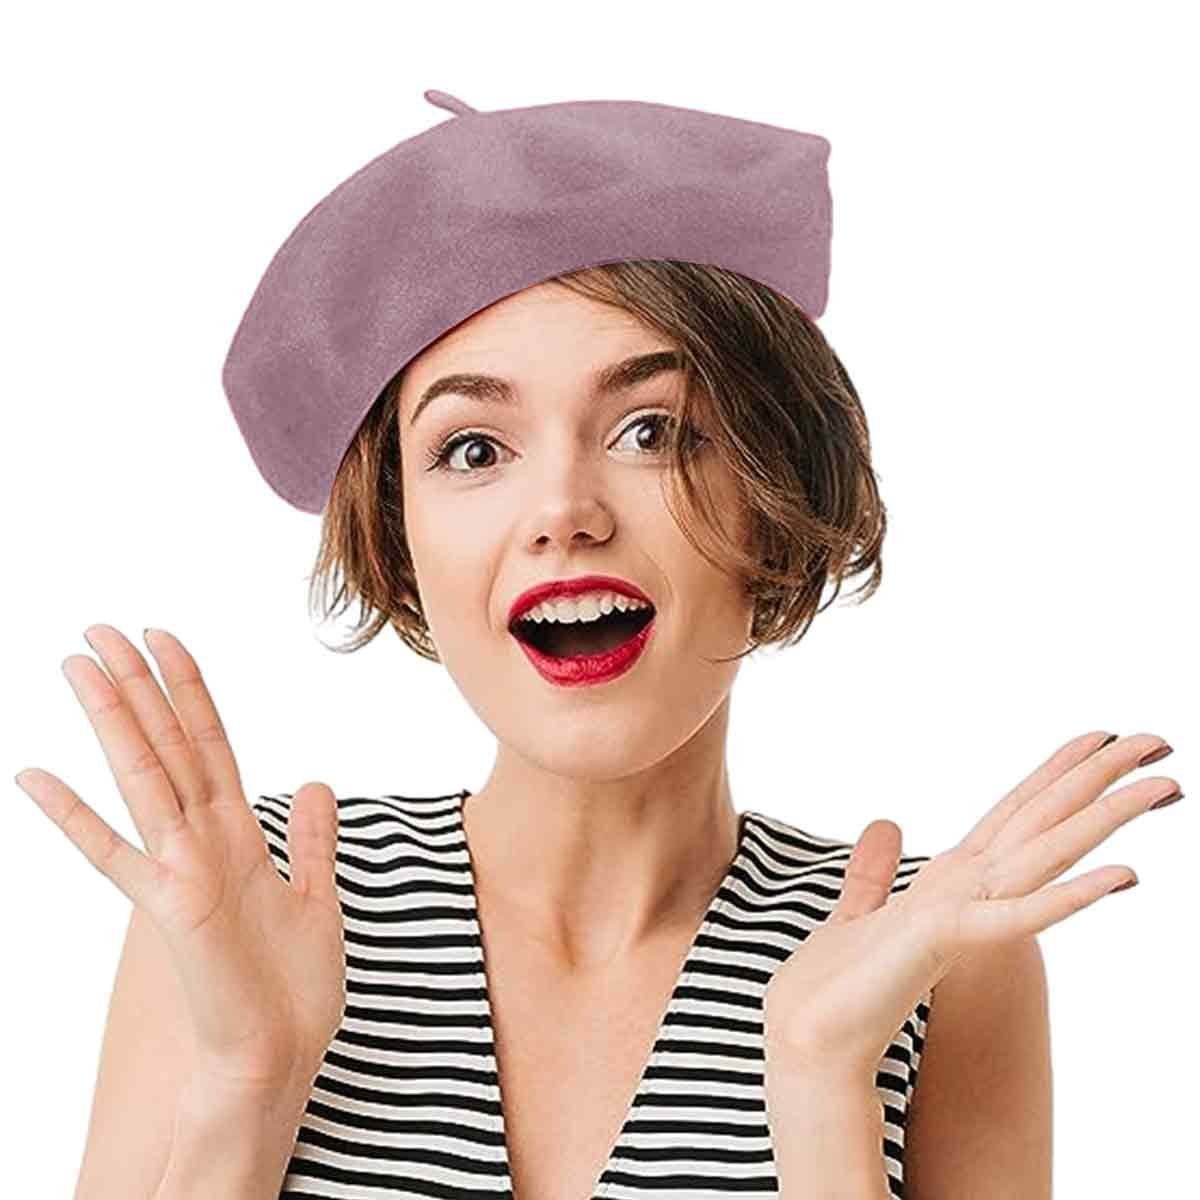 Einemgeld Baskenmütze Damen Barett Wolle Baskenmütze Britischer Stil Vintage Barette Mütze Fuchsia Rosa